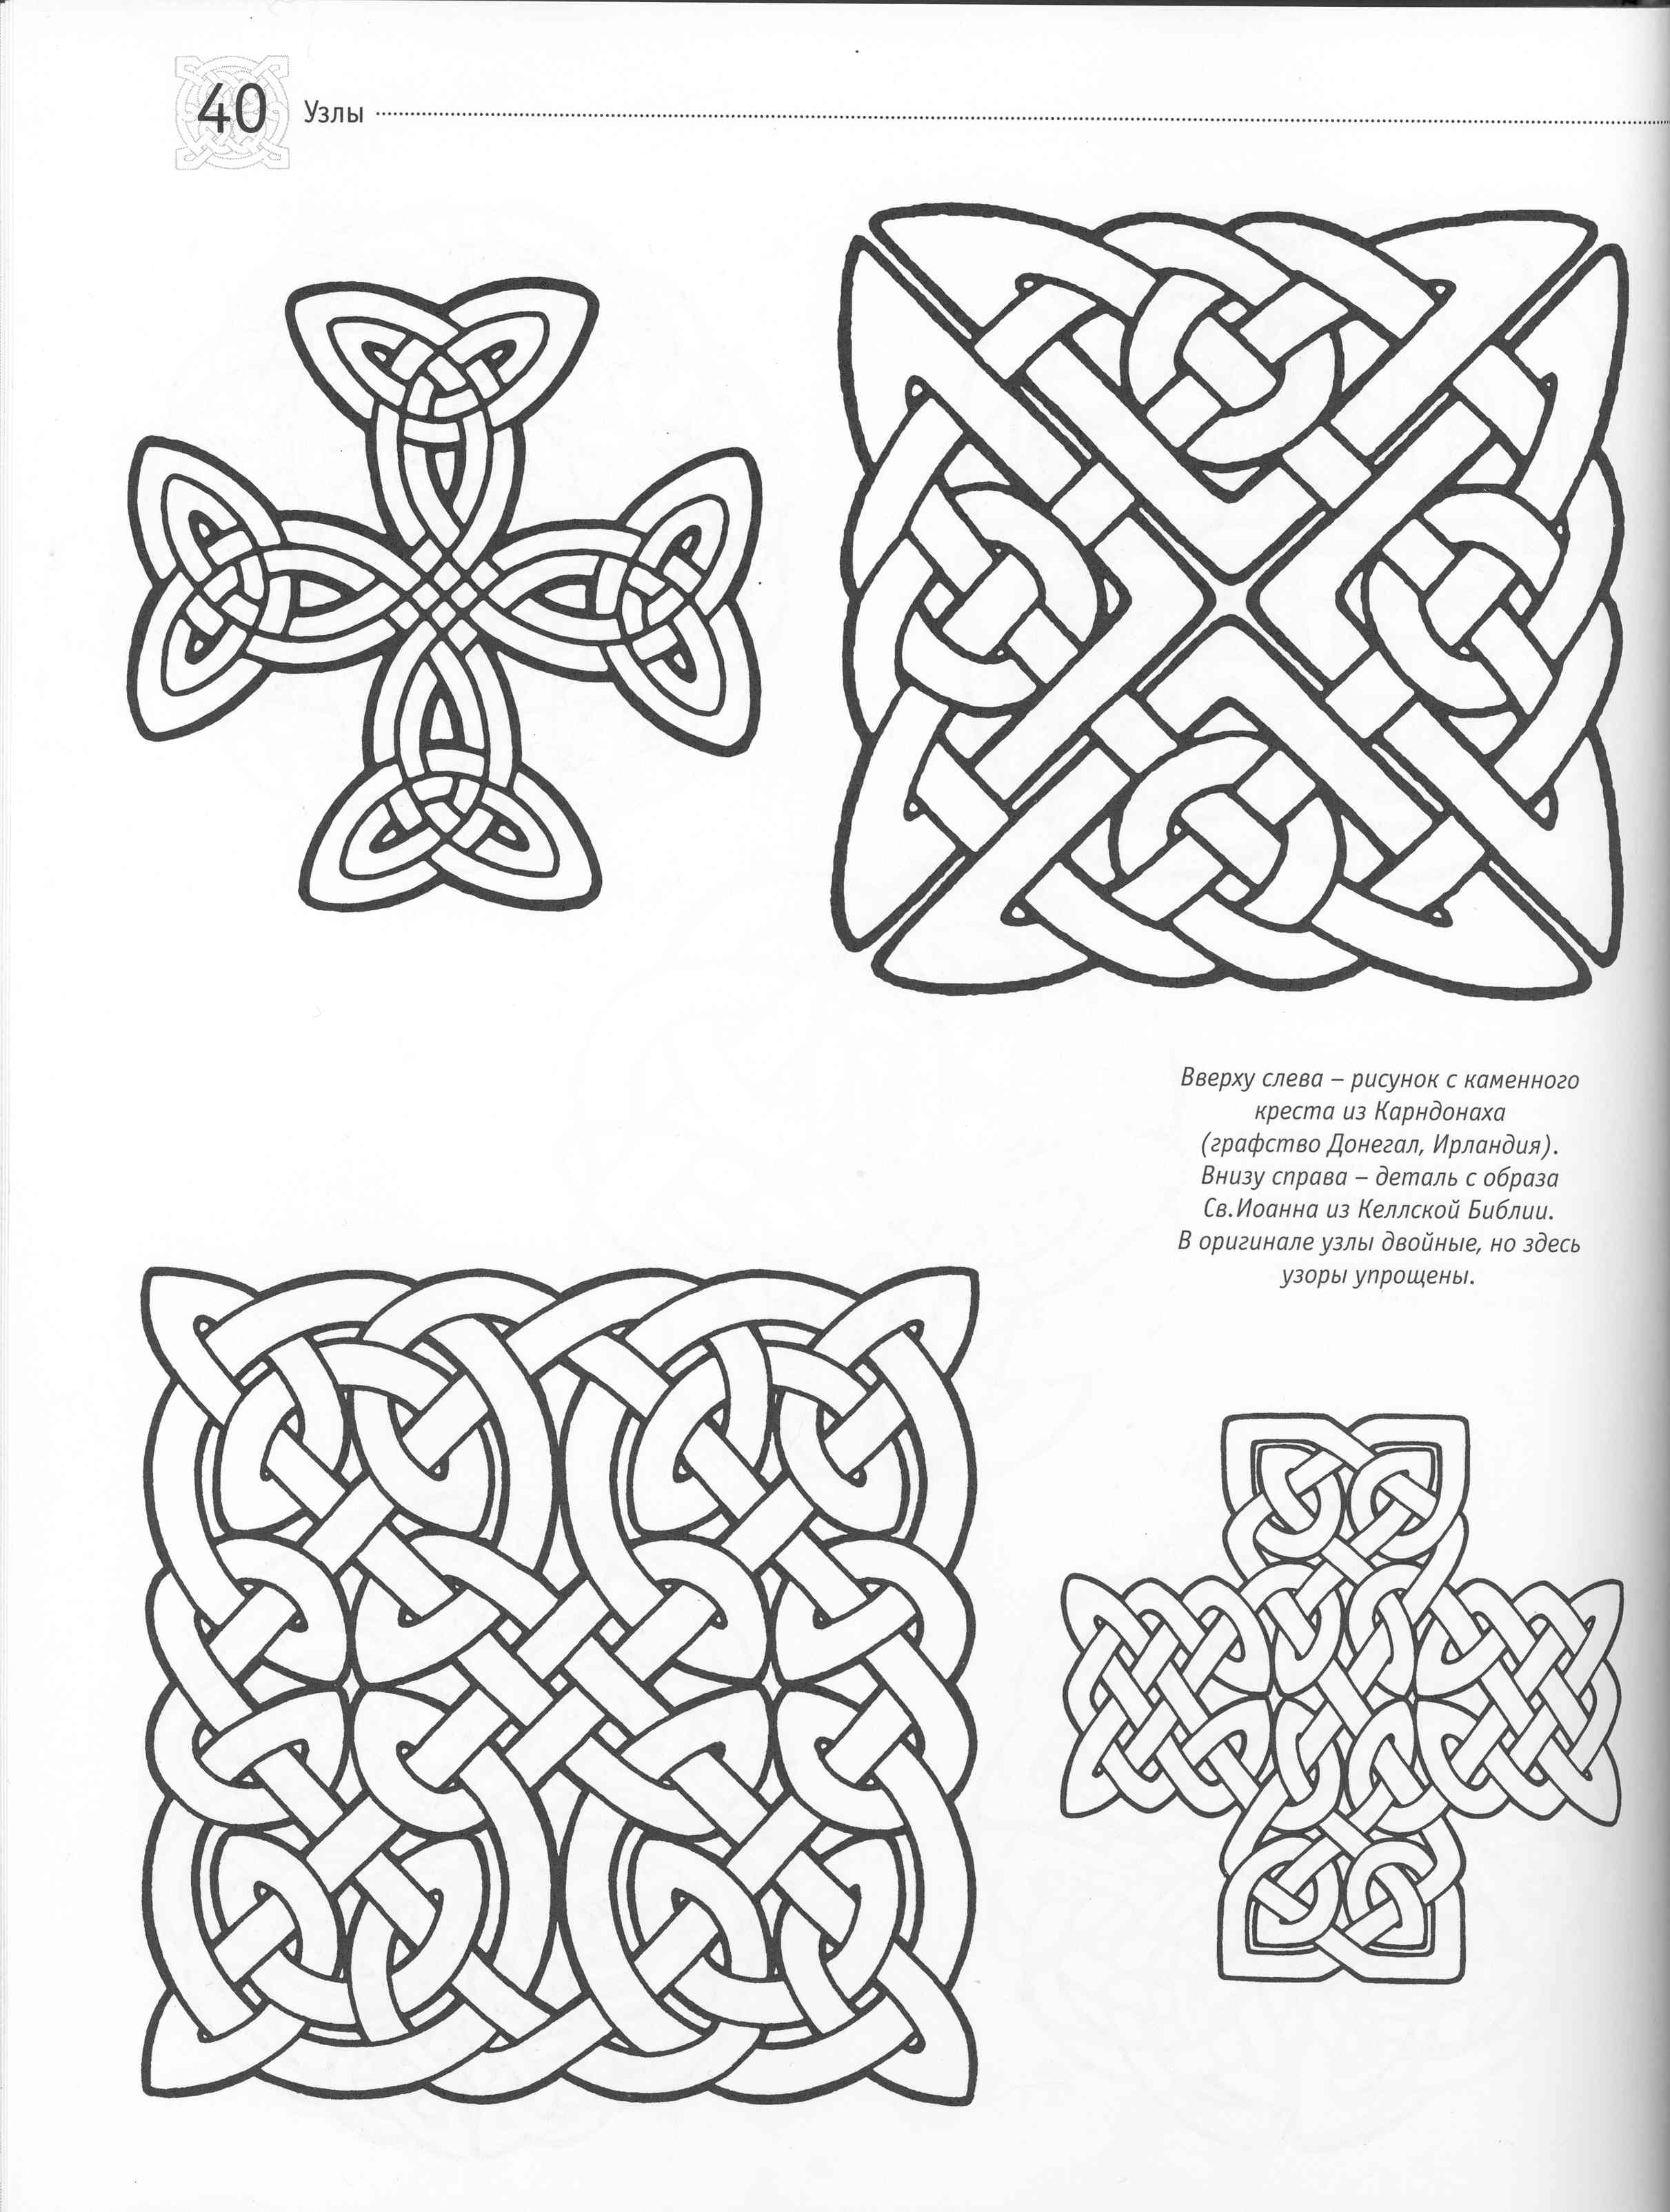 Кельтский шнуровой орнамент